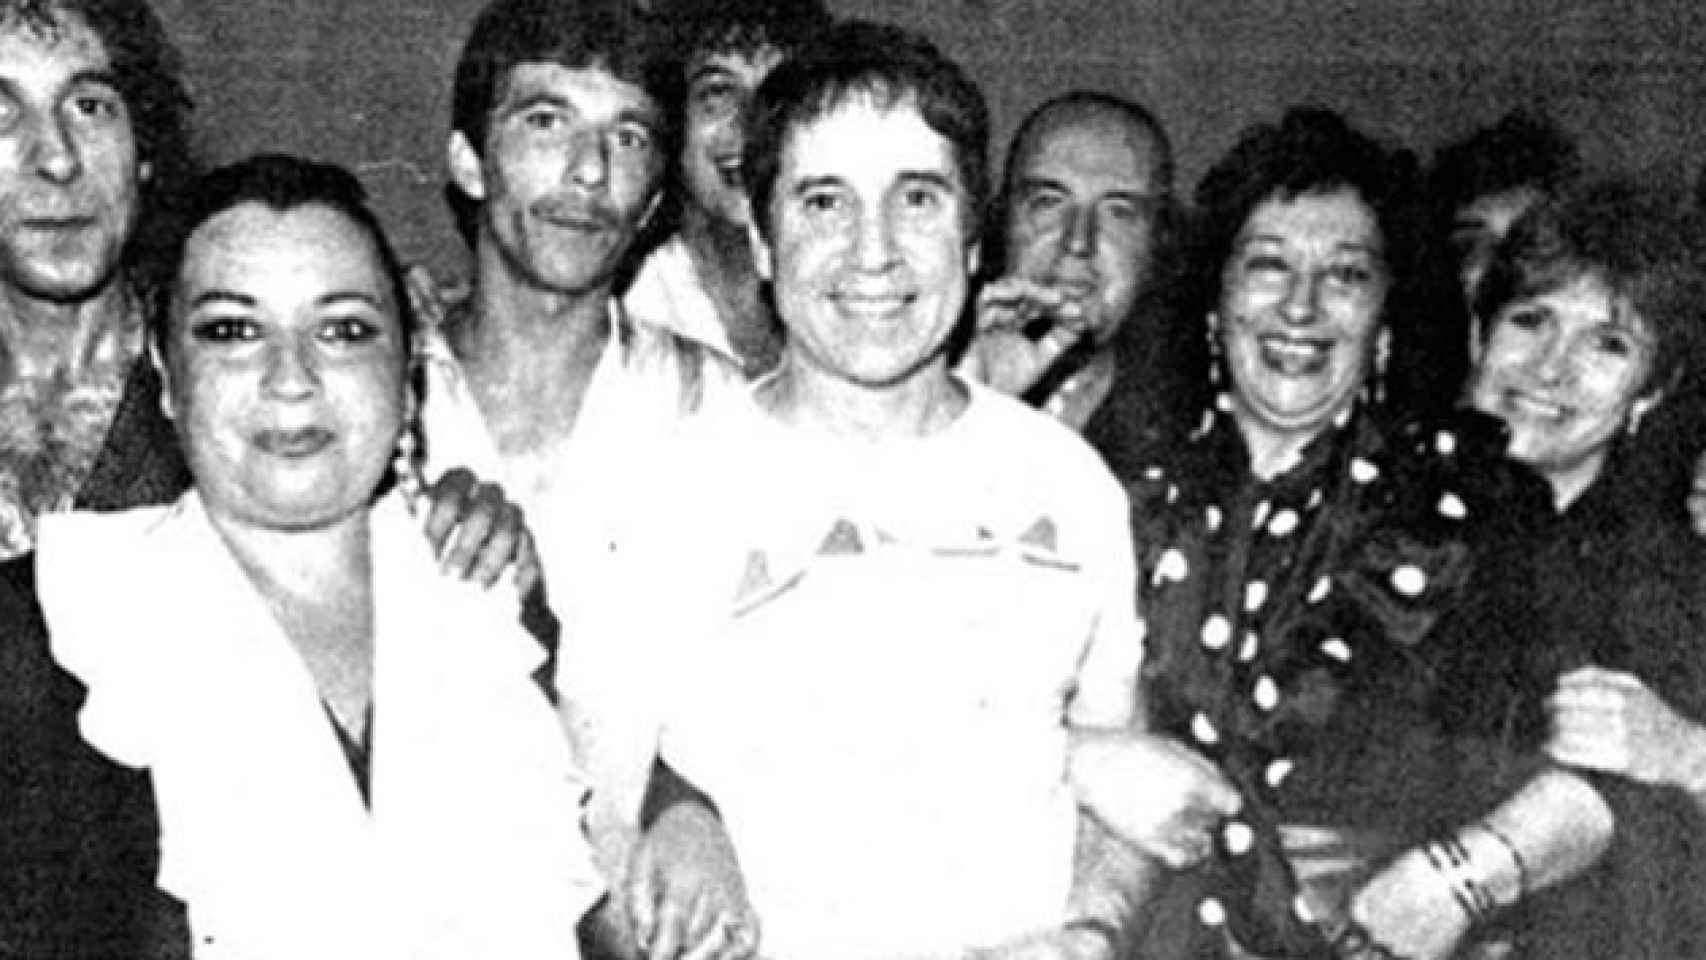 En el centro de la imagen, Paul Simon; detrás, a su derecha, Chiquito de la Calzada; y a la derecha de la imagen, Carrie Fisher, durante un sarao en Málaga en 1989